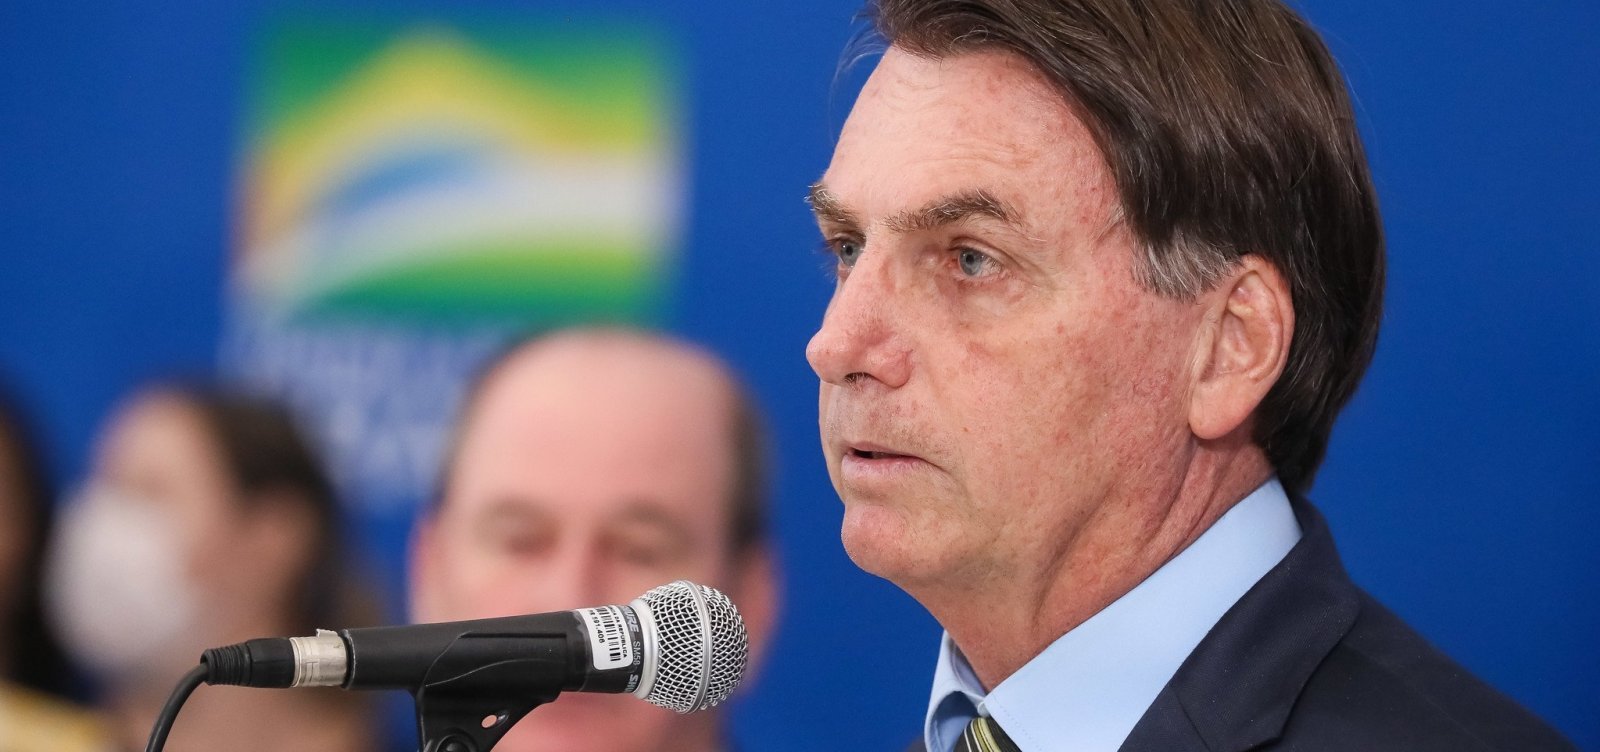 Moro 'mentiu' sobre interferência na Polícia Federal, afirma Bolsonaro